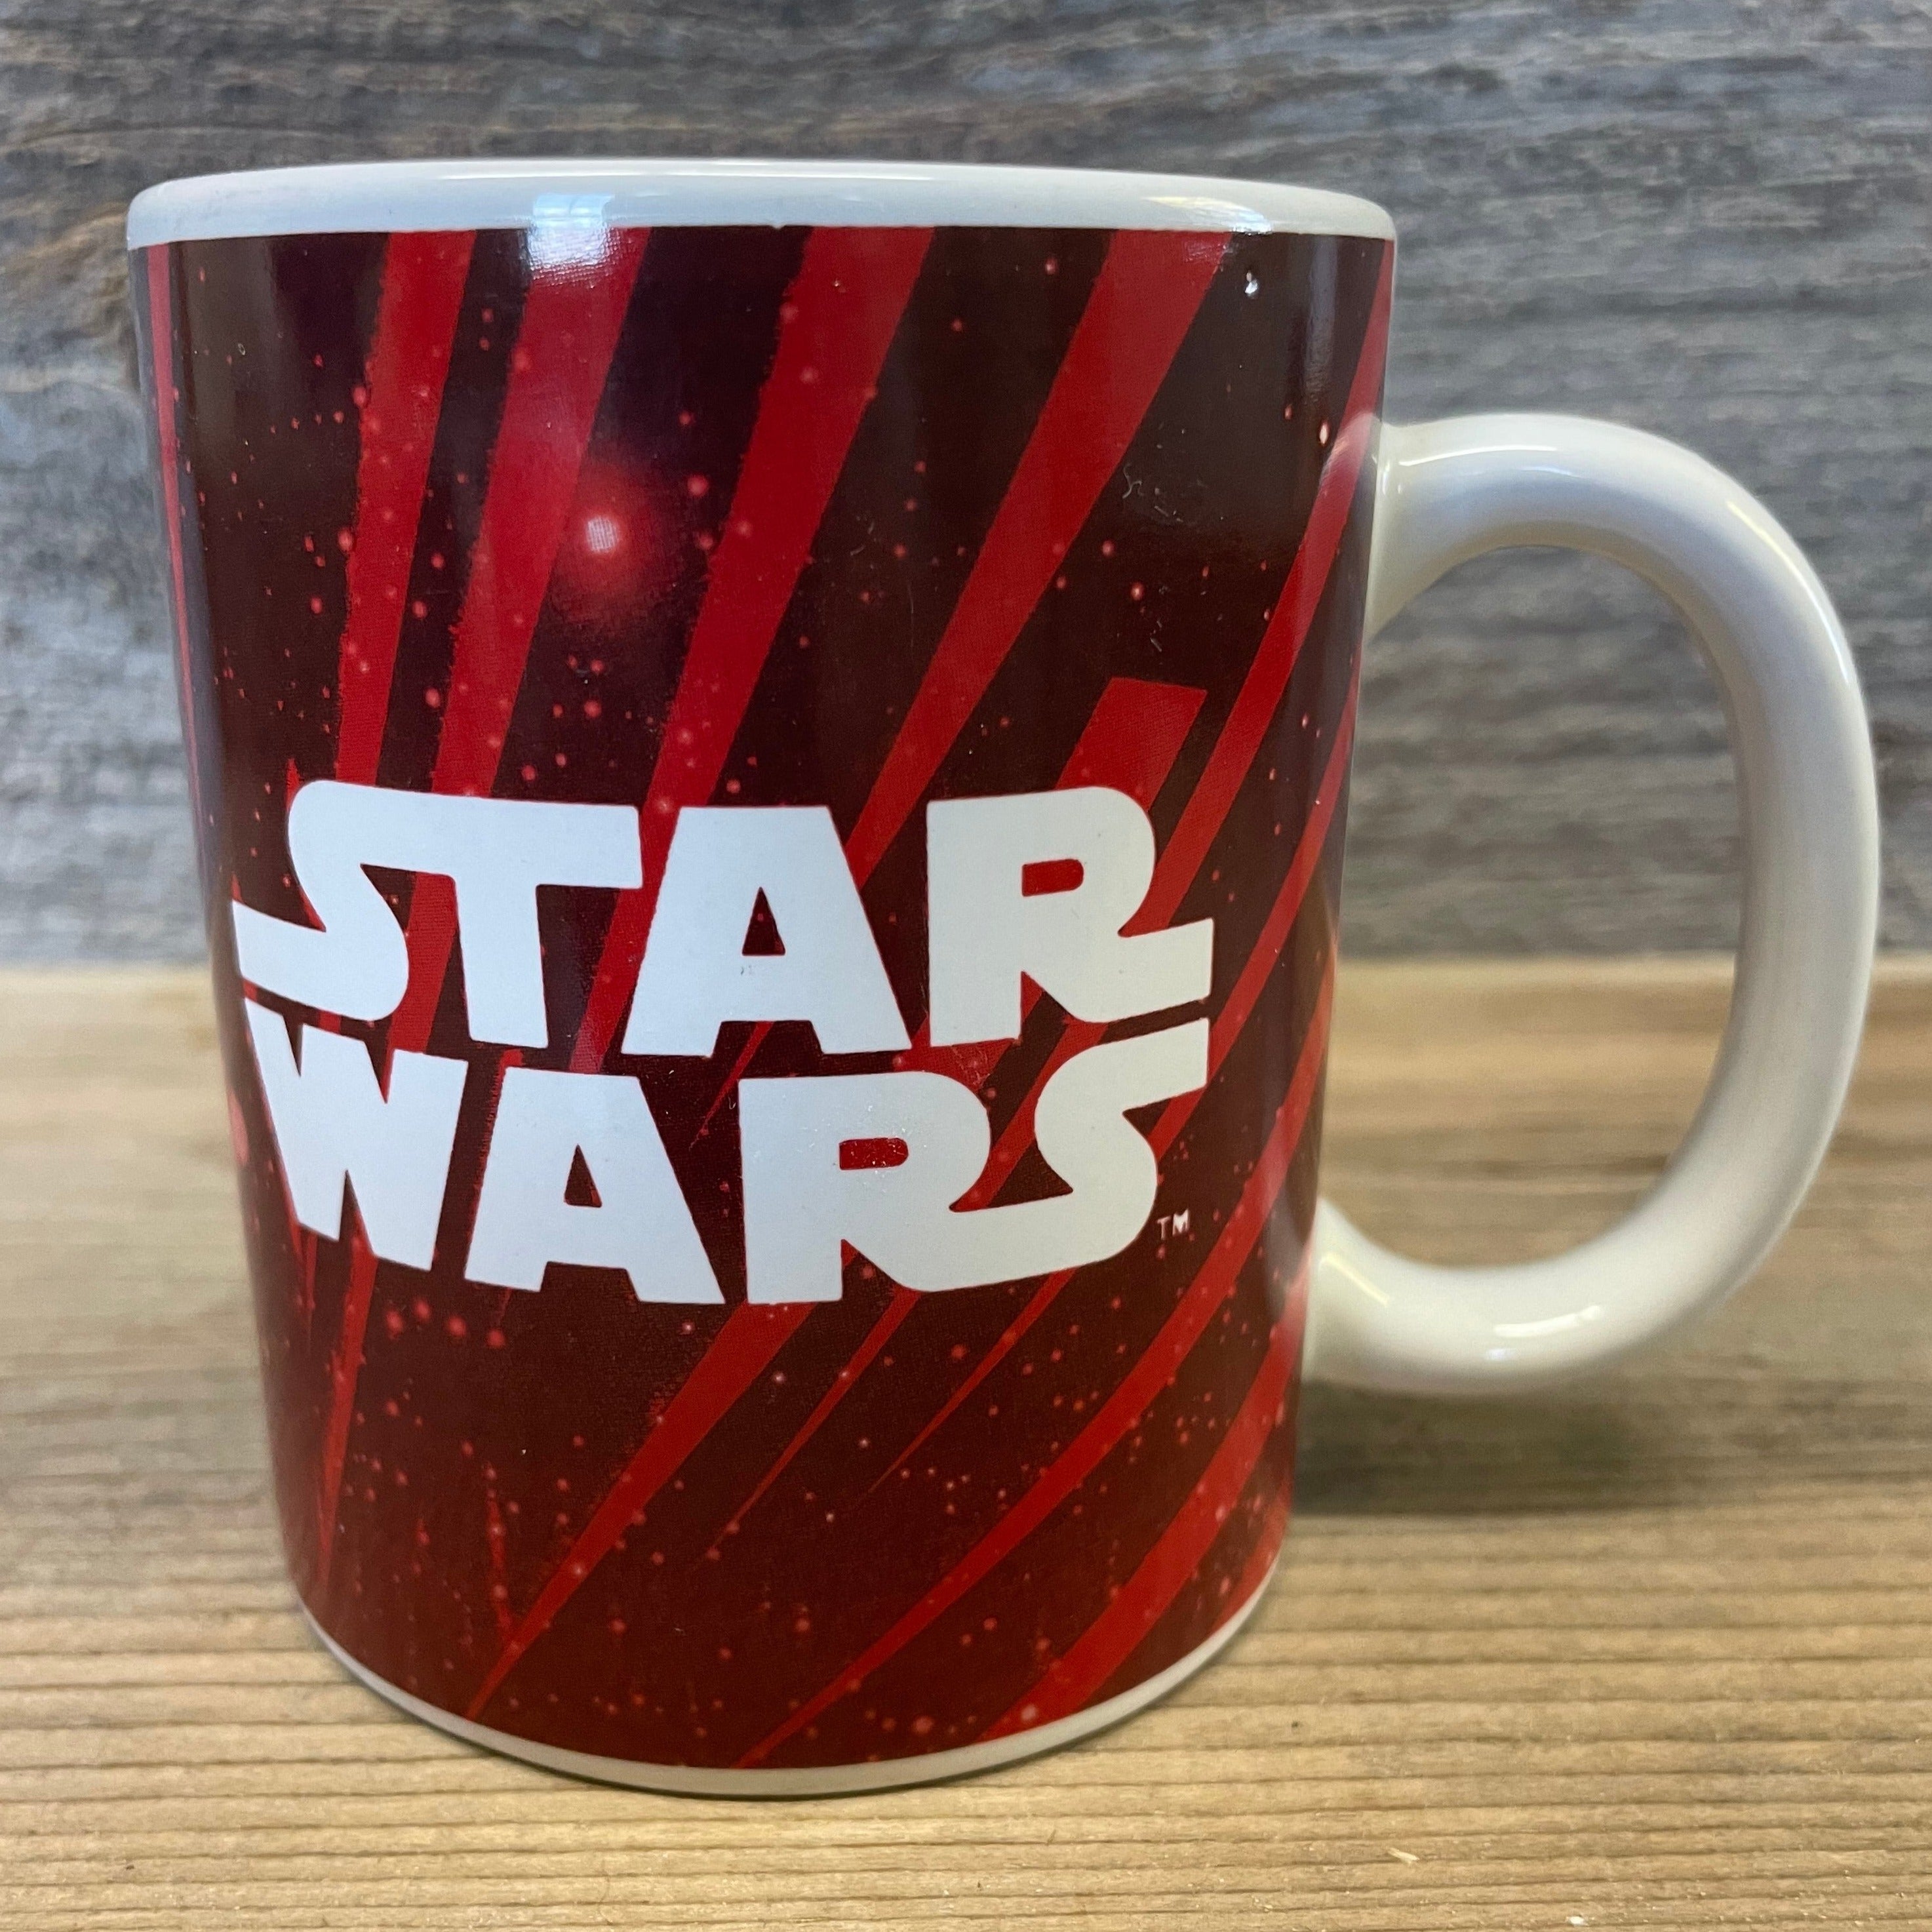 Galerie Star Wars Darth Vader Mug